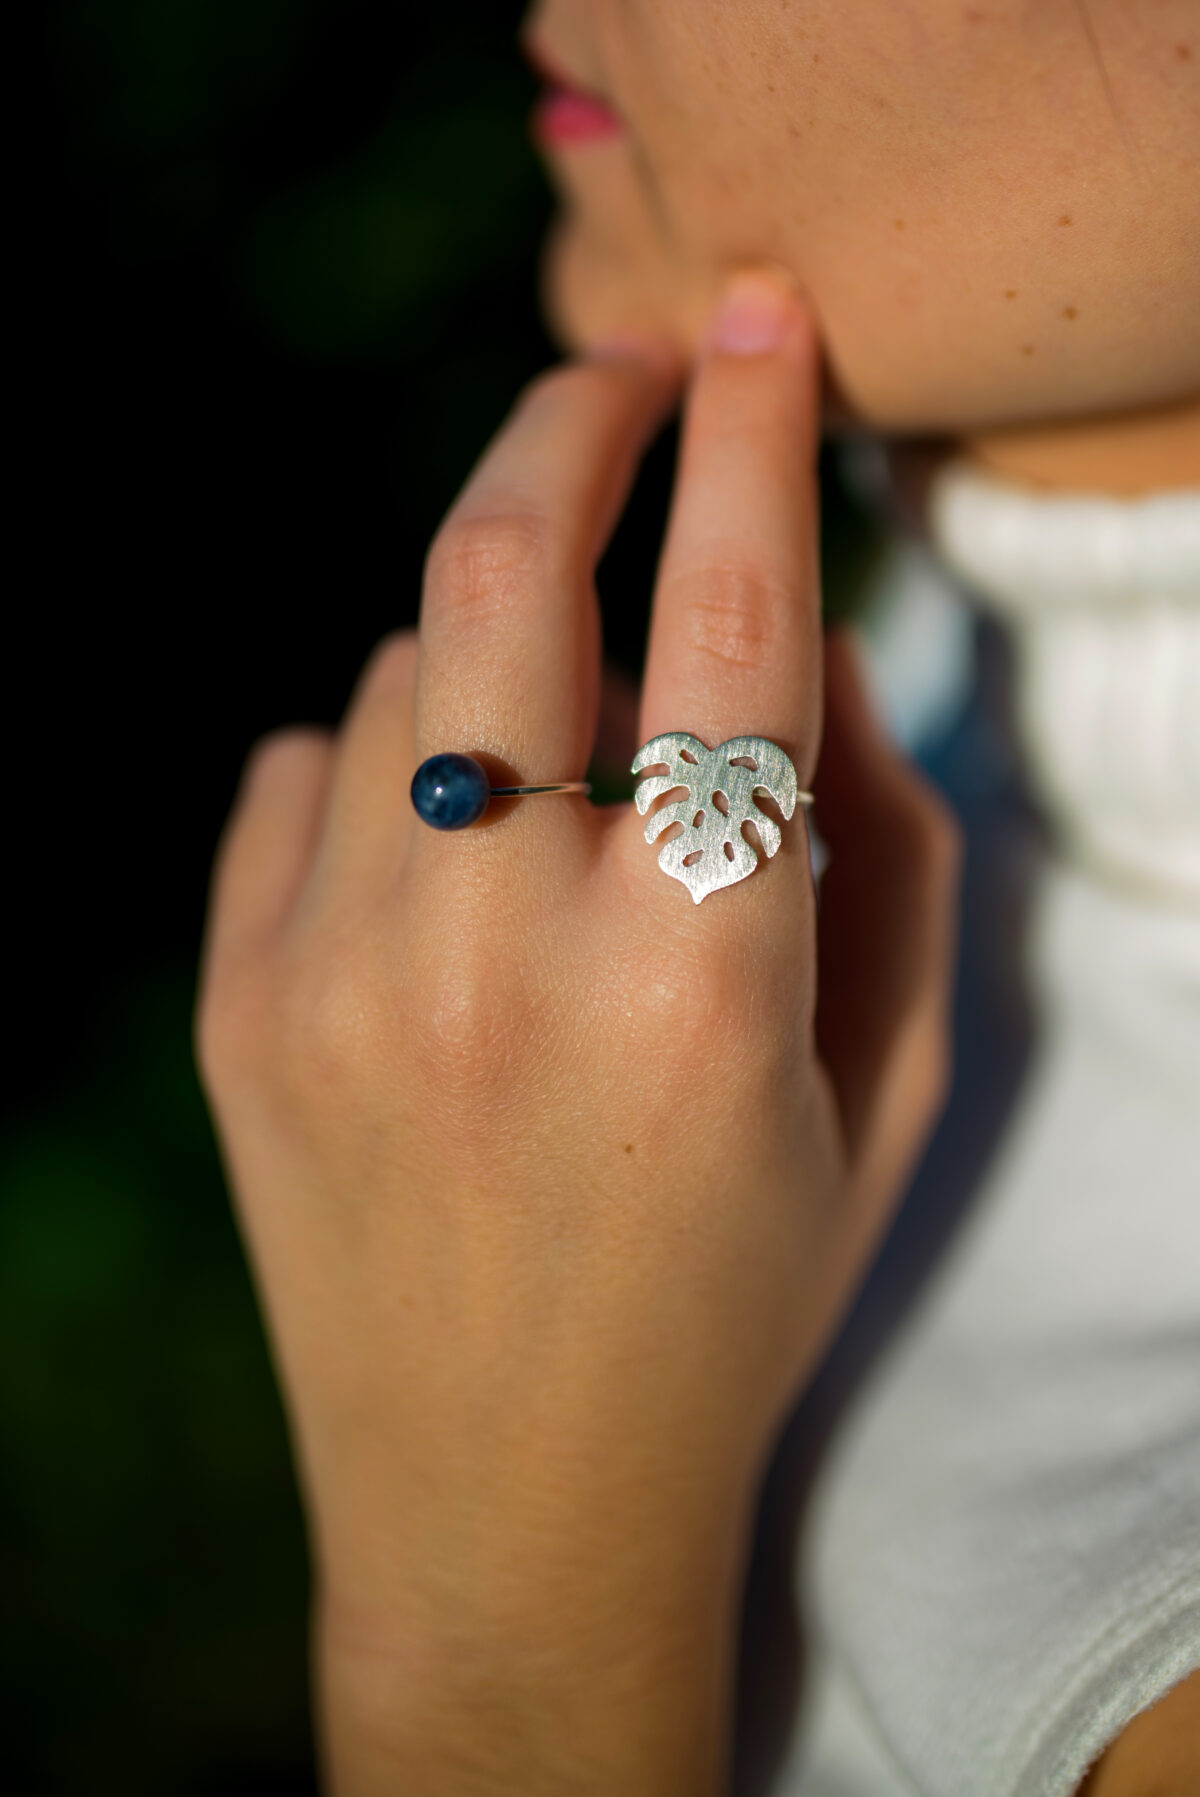 “Πέτρα” ασημένιο δαχτυλίδι  (Σοδαλίτης) “Πέτρα” ασημένιο δαχτυλίδι  (Σοδαλίτης) “Πέτρα” ασημένιο δαχτυλίδι  (Σοδαλίτης) 6